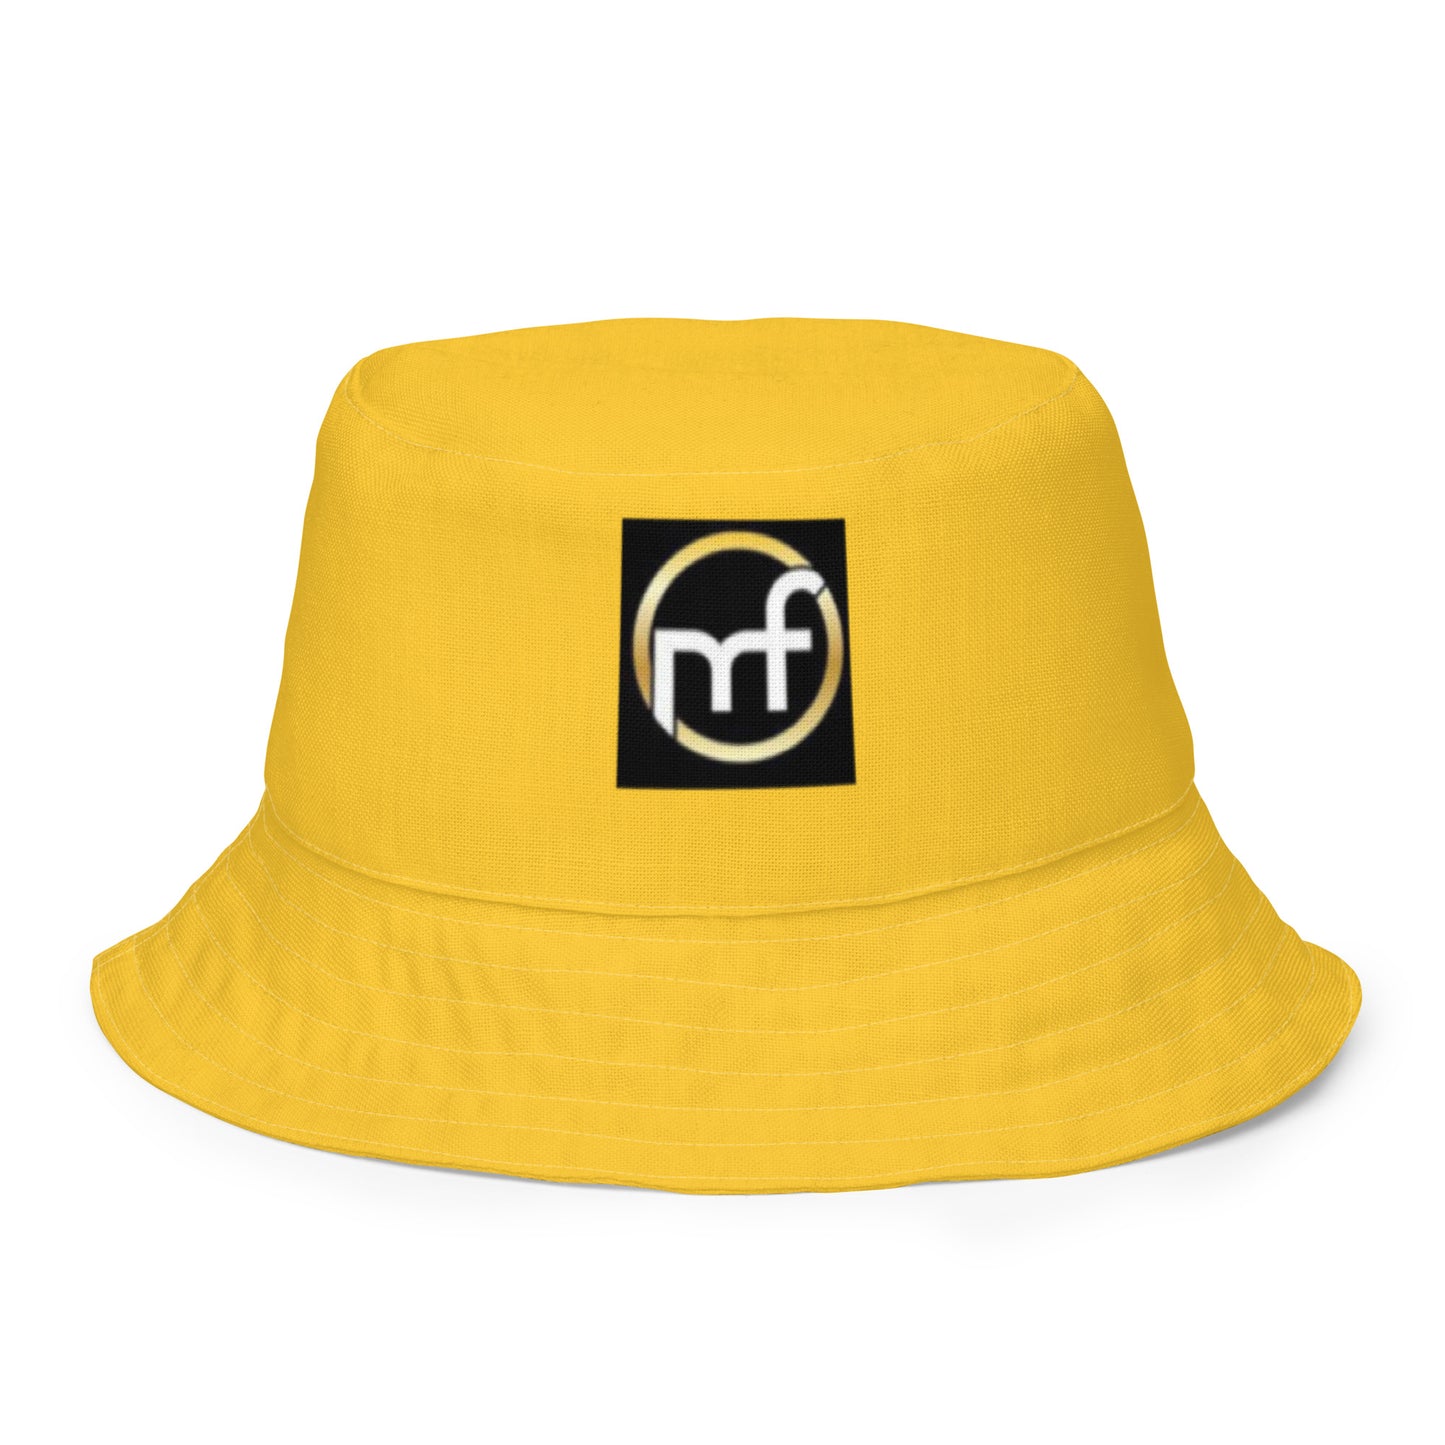 YCSWU bucket hat - yellow